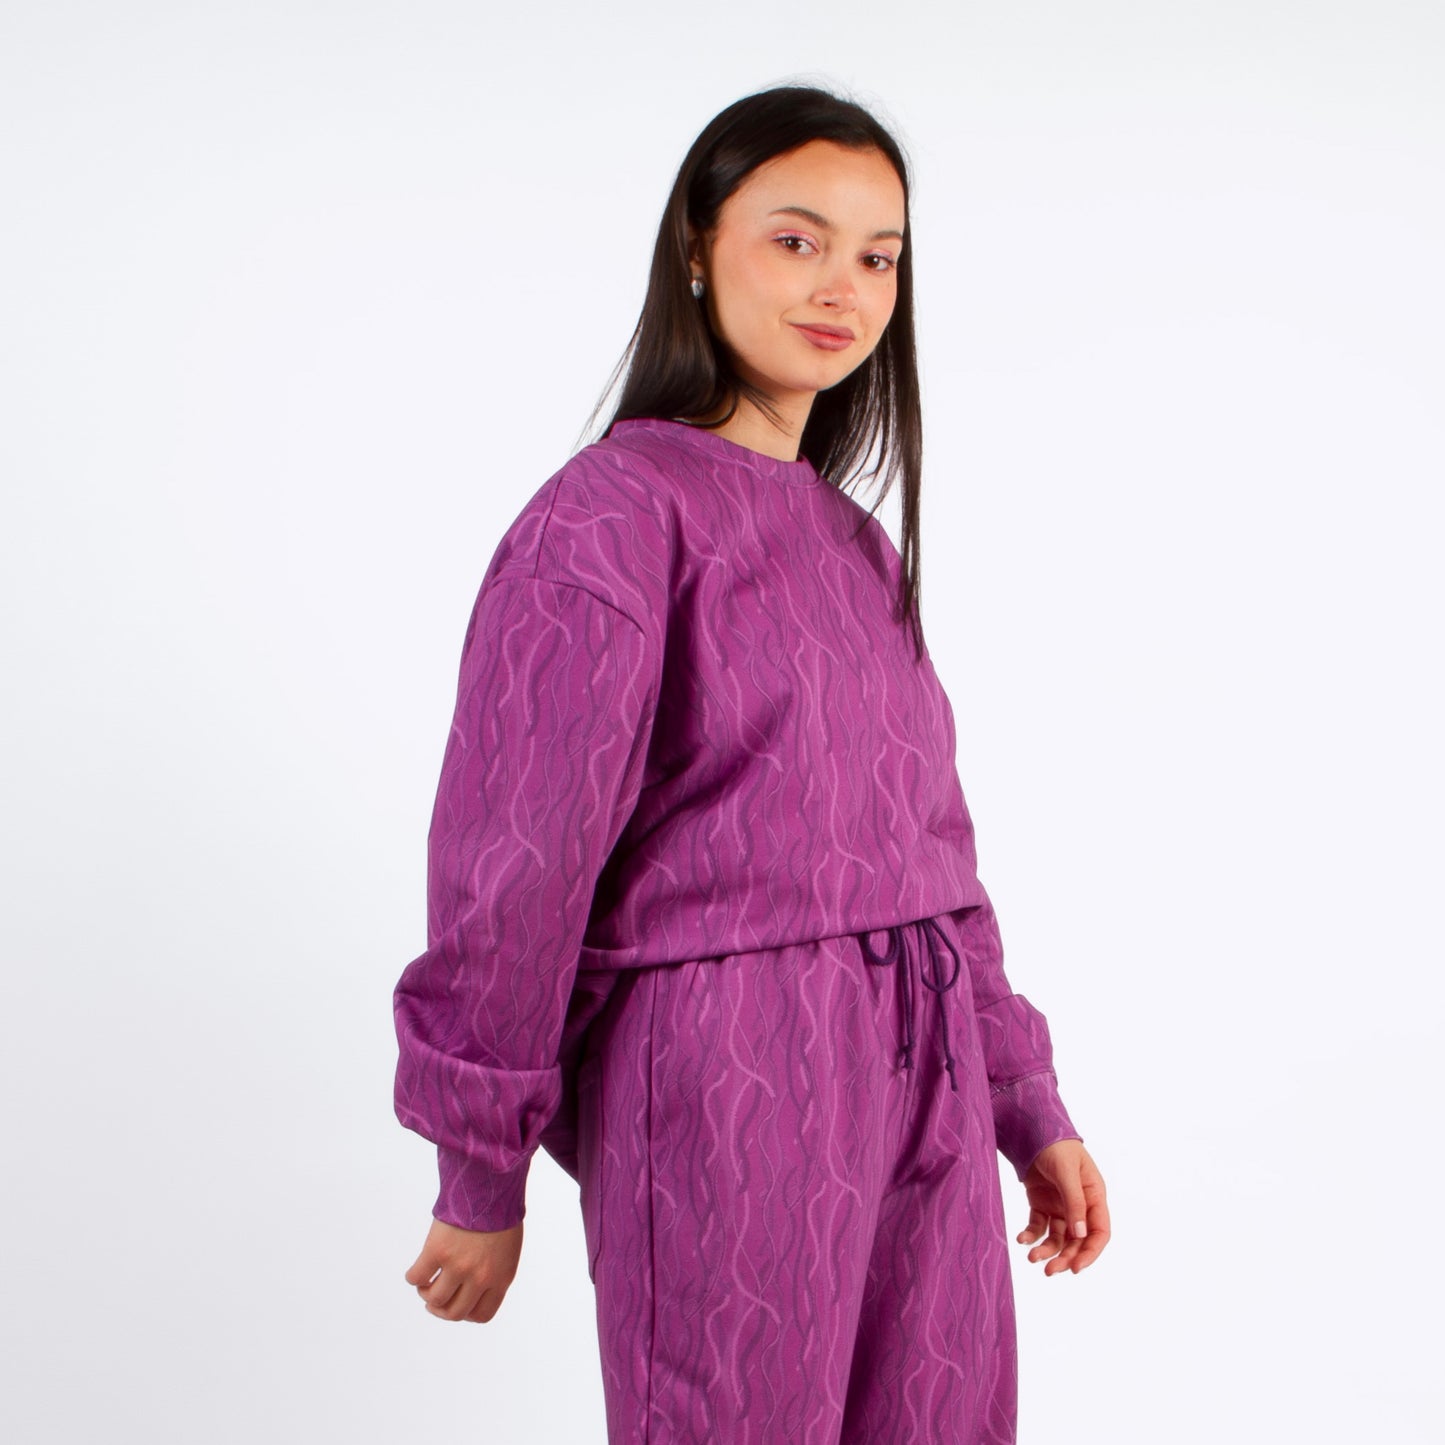 lucewear: femme portant un sweatshirt imprimé violet